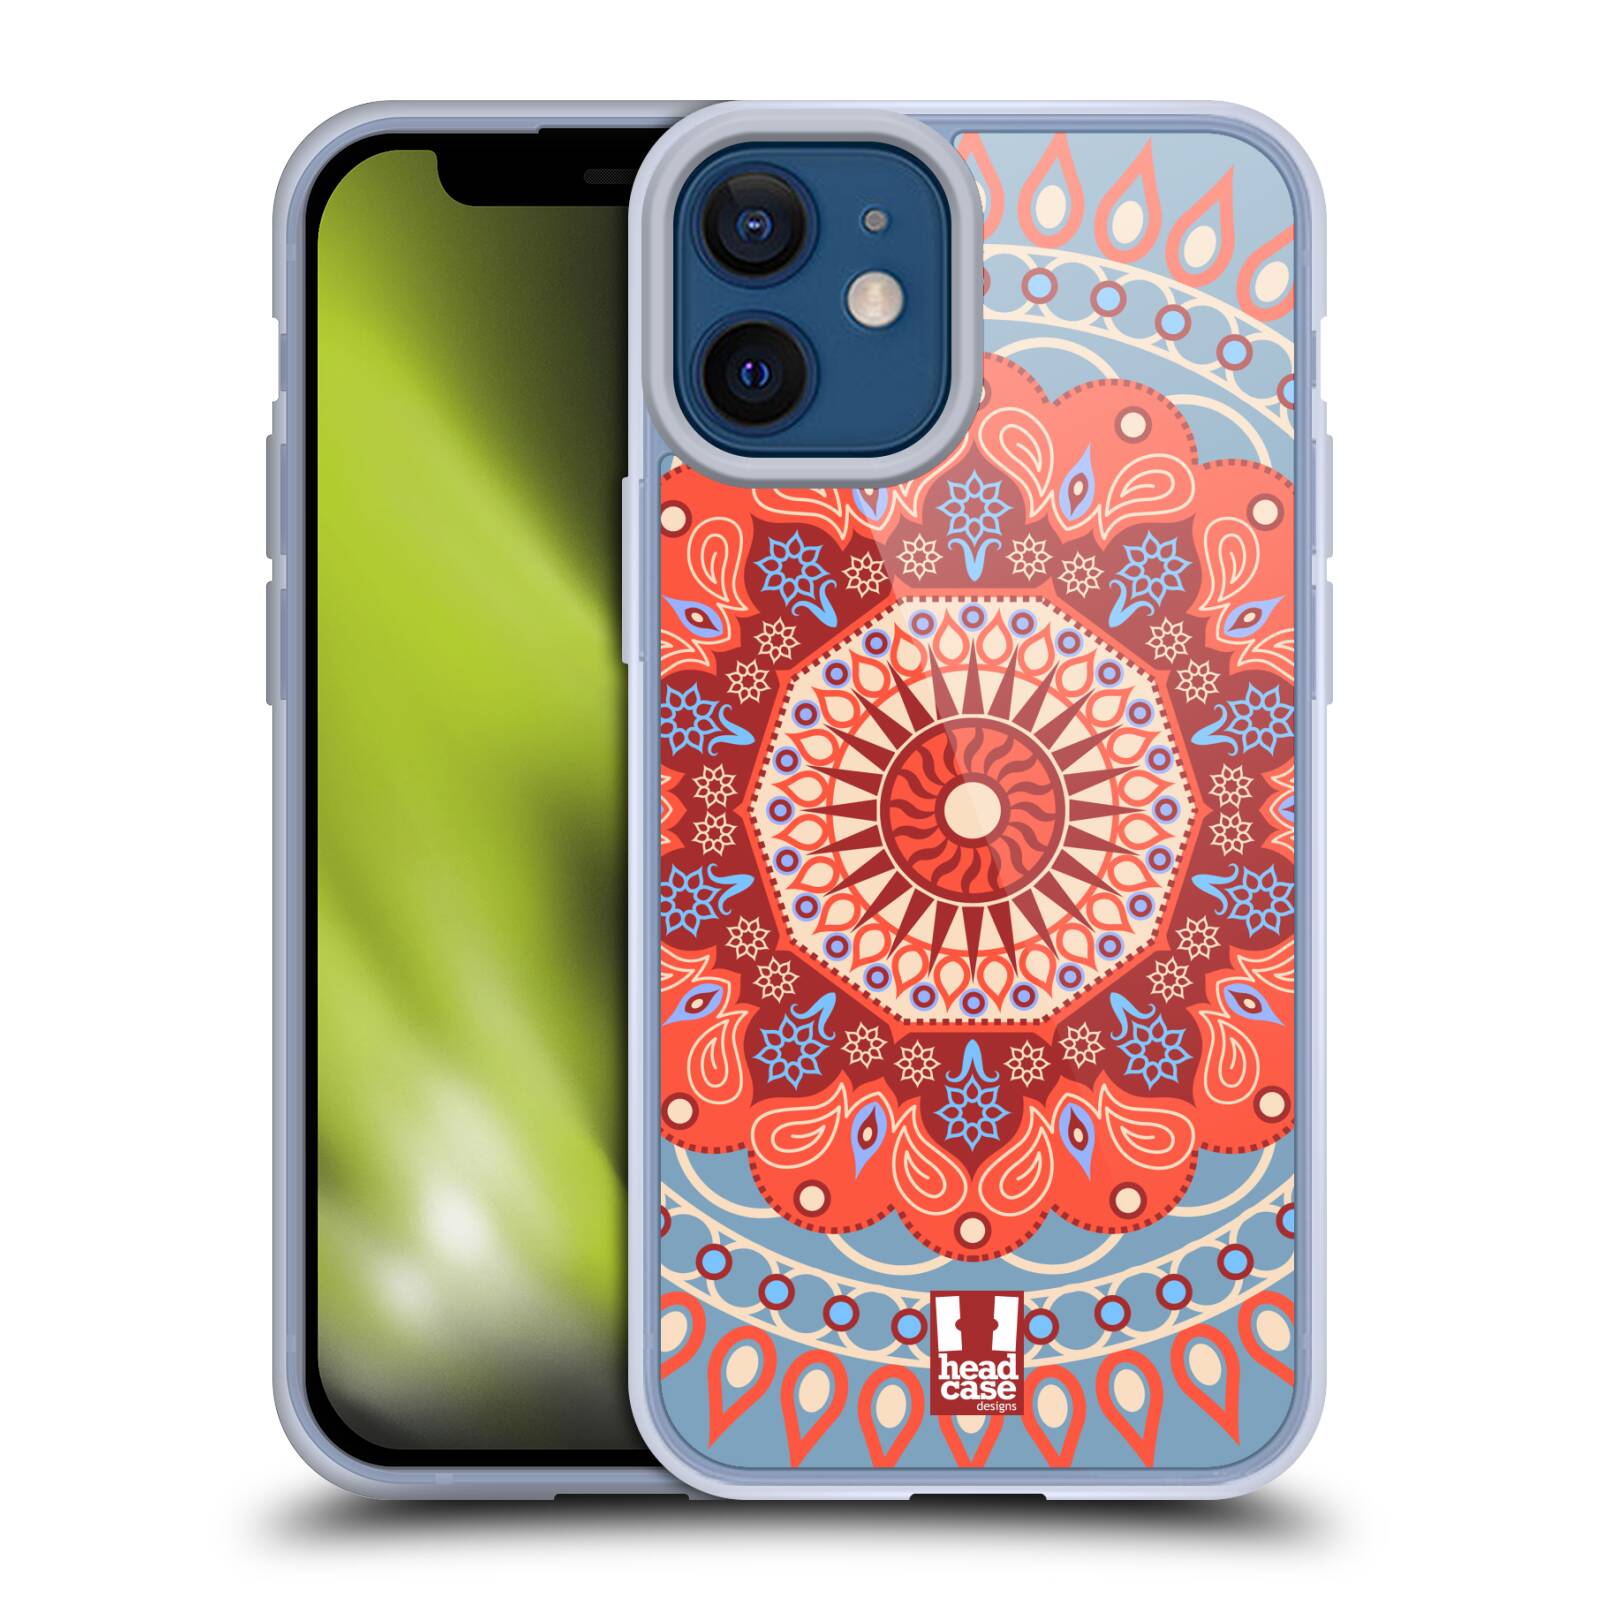 Plastový obal na mobil Apple Iphone 12 MINI vzor Indie Mandala slunce barevný motiv ČERVENÁ A MODRÁ